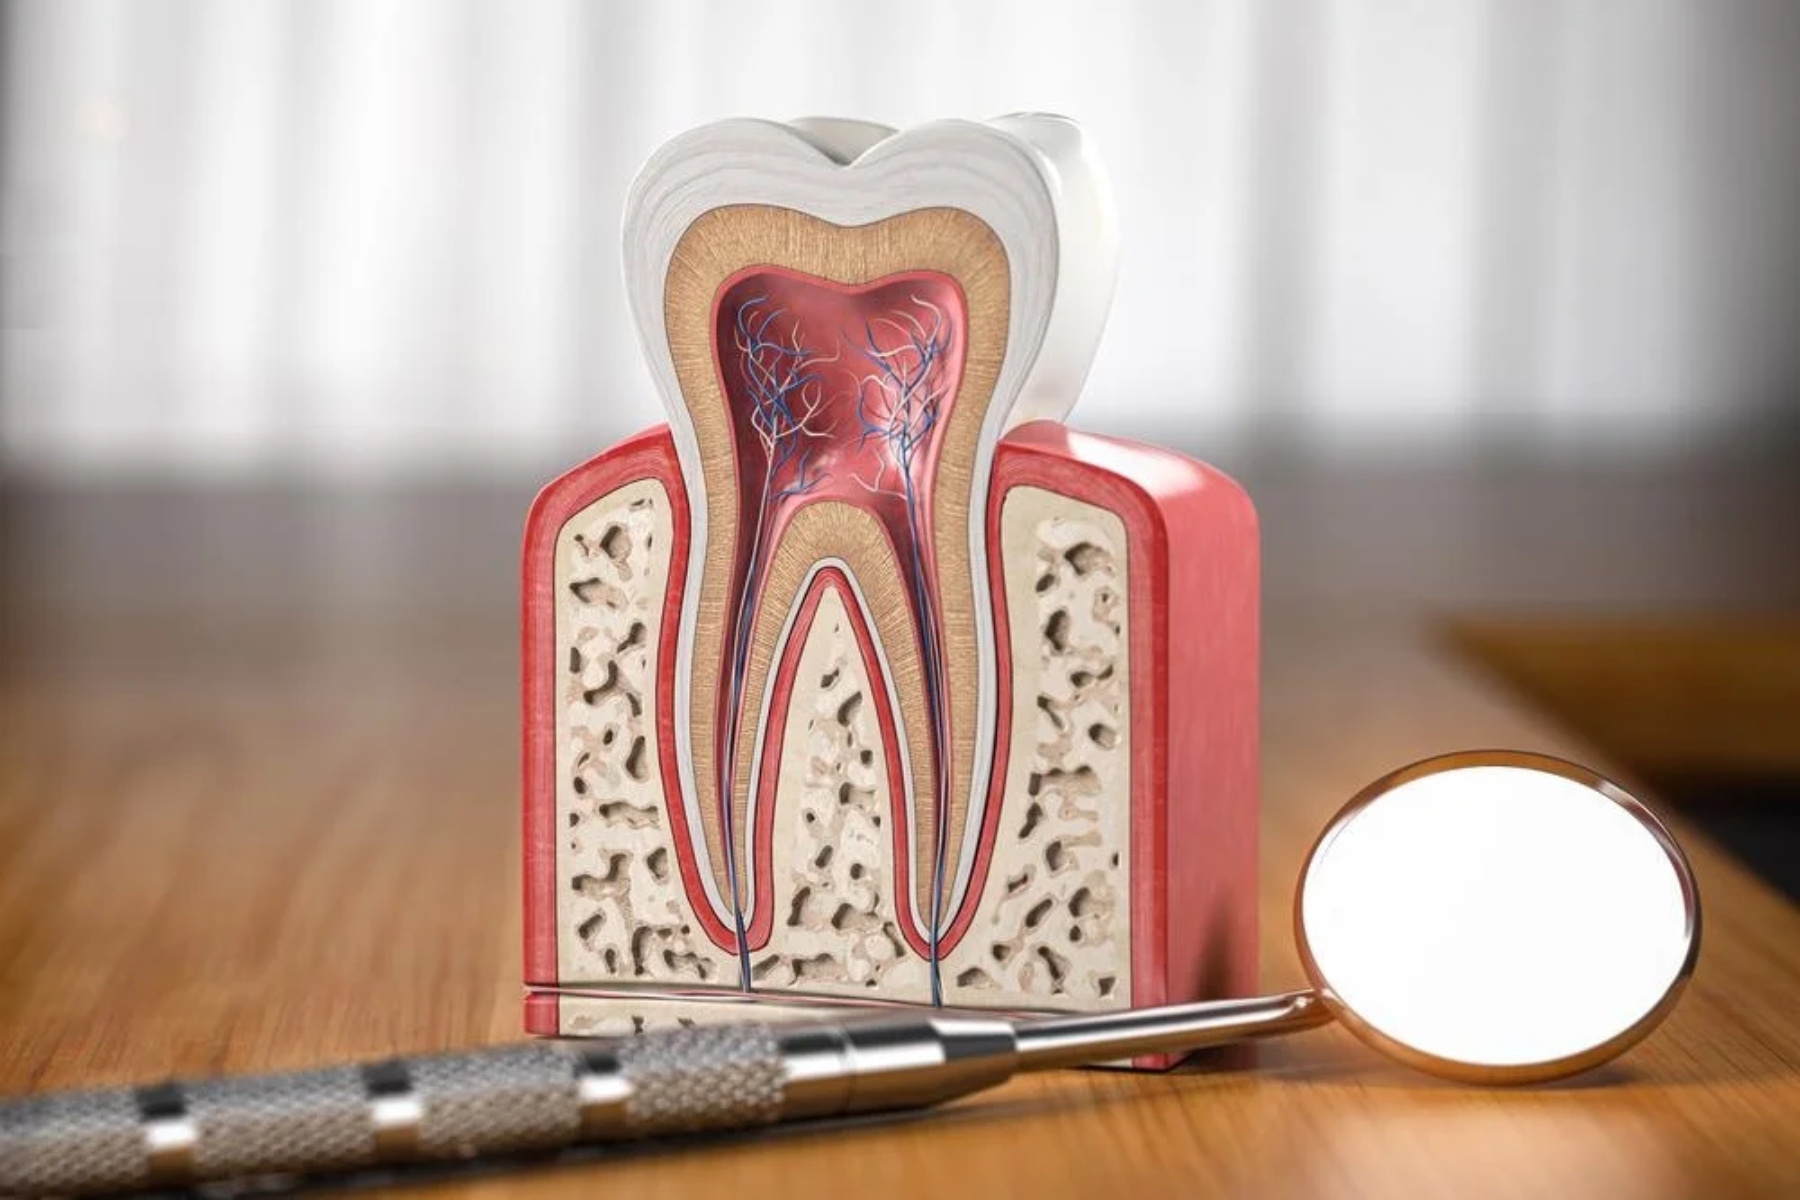 Δόντια: Η ποικιλία στη σύνθεση του σμάλτου προβλέπει την υγεία των δοντιών